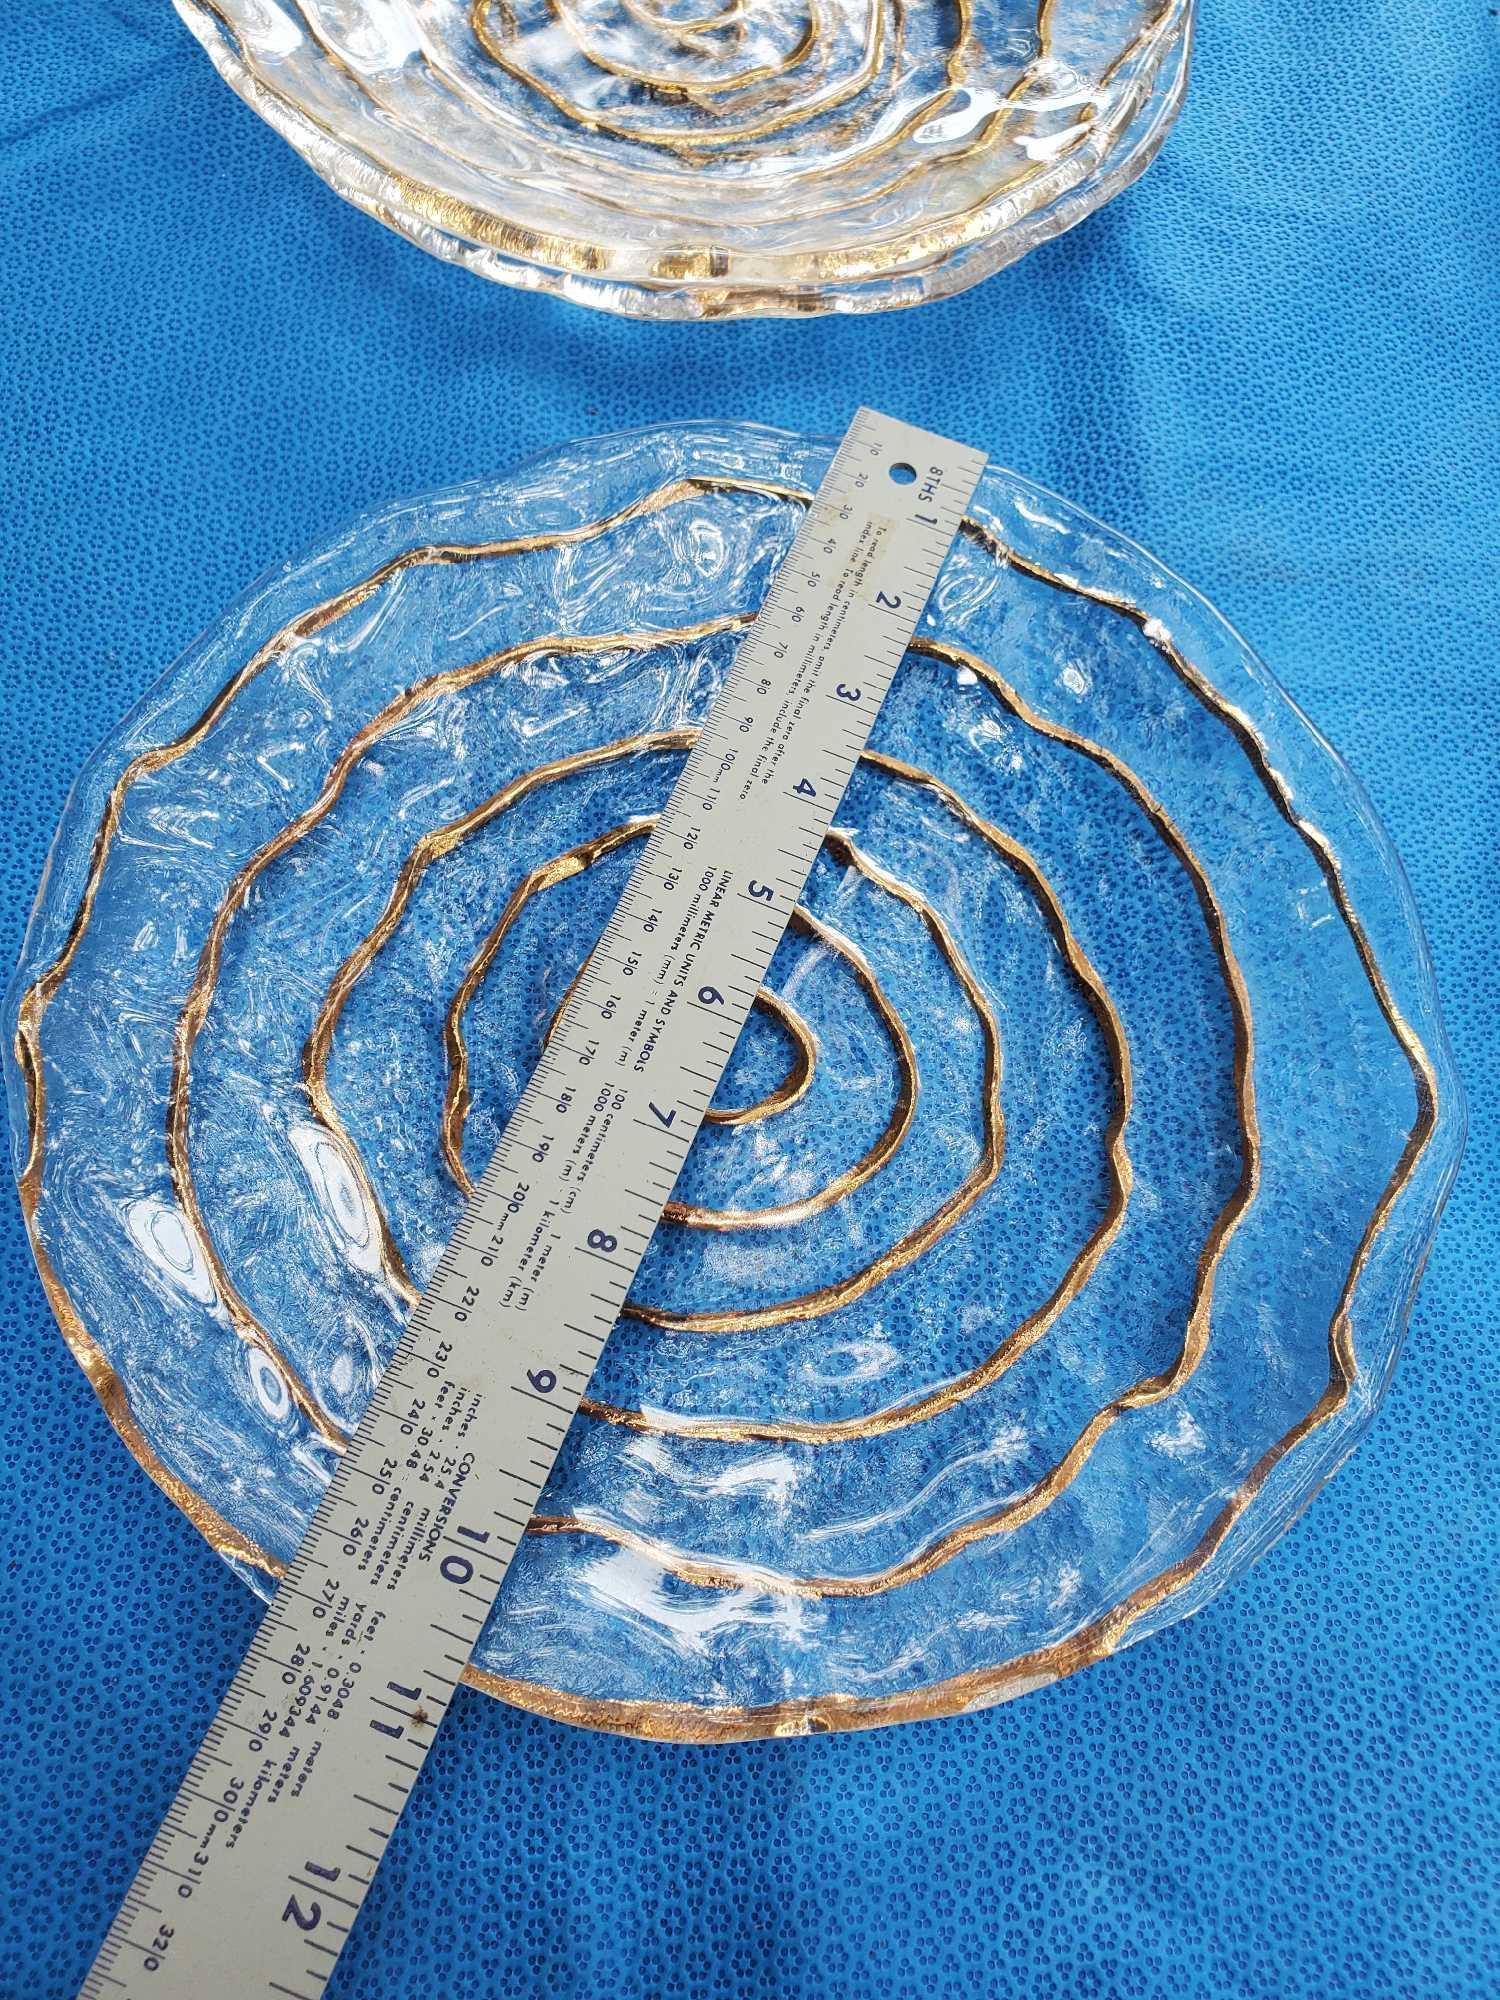 SET 1950's IVV Glacier Platter and Bowl 10K Gold Trim AND Spiral Platter and Bowl